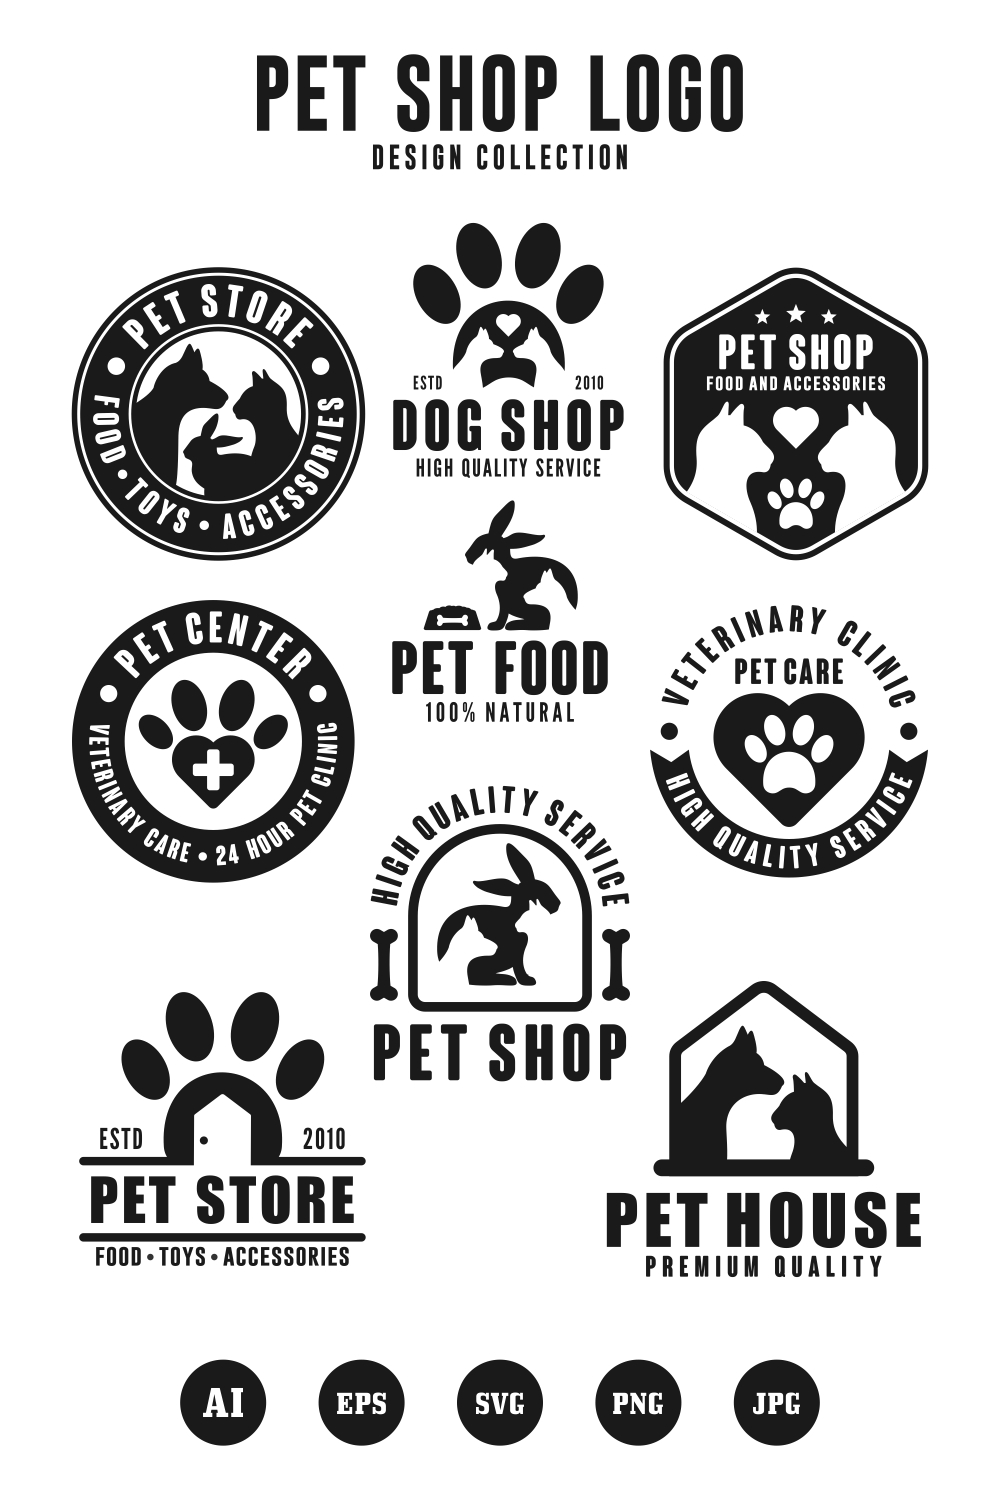 9 Pet Shop design logo collection pinterest preview image.